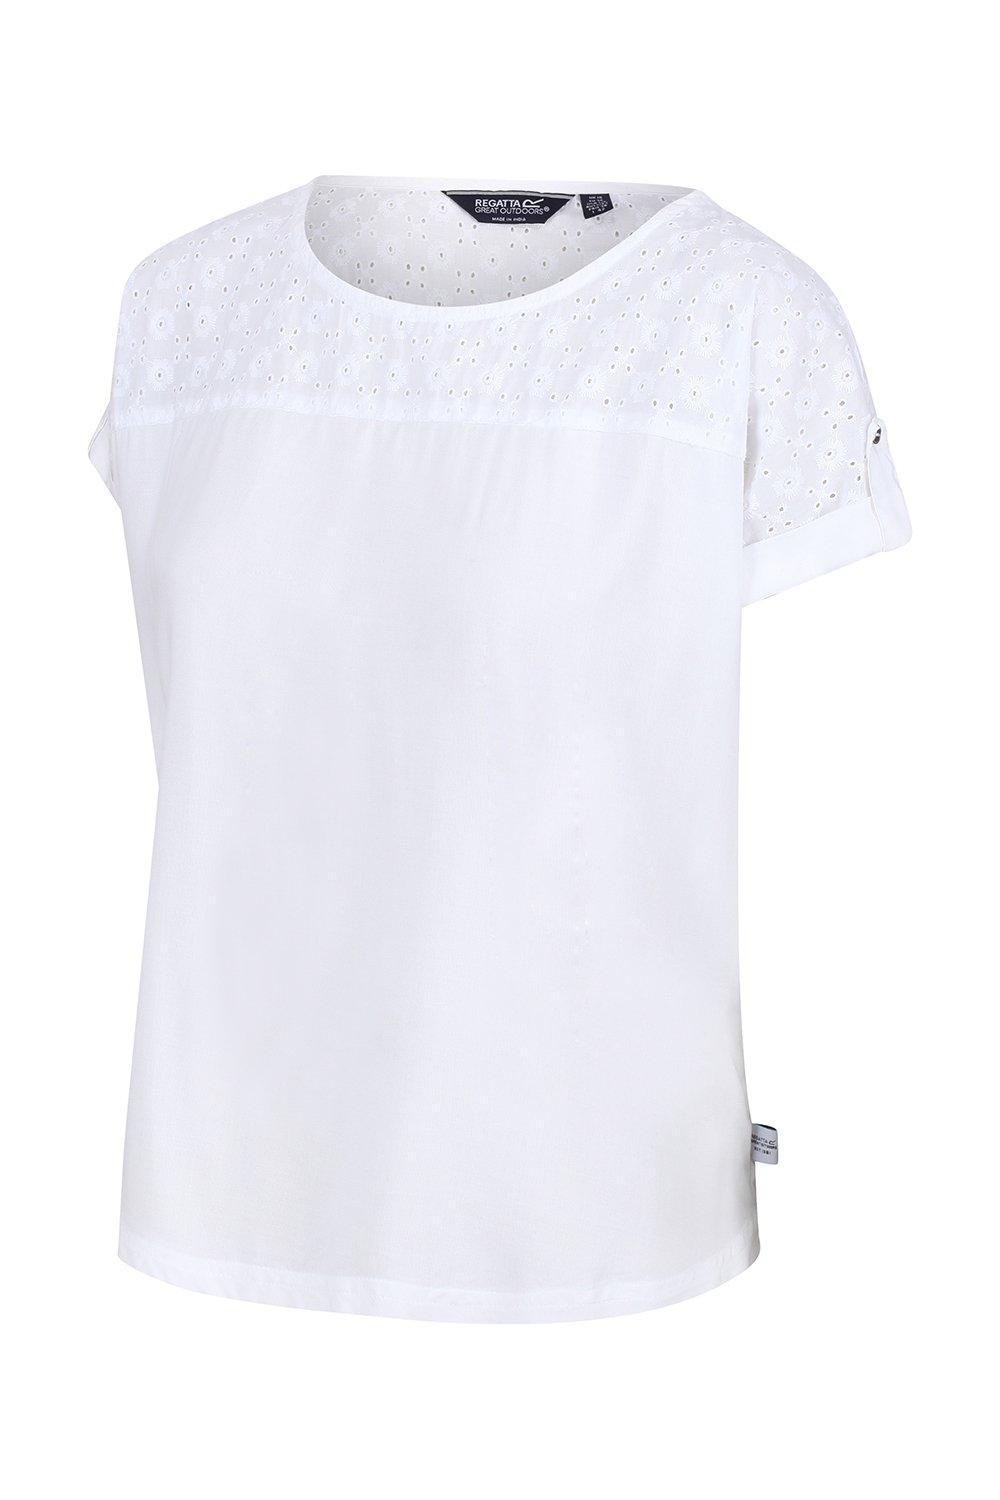 Хлопковая рубашка Jaida с короткими рукавами из прохладной ткани Regatta, белый топ твоё летний 42 размер